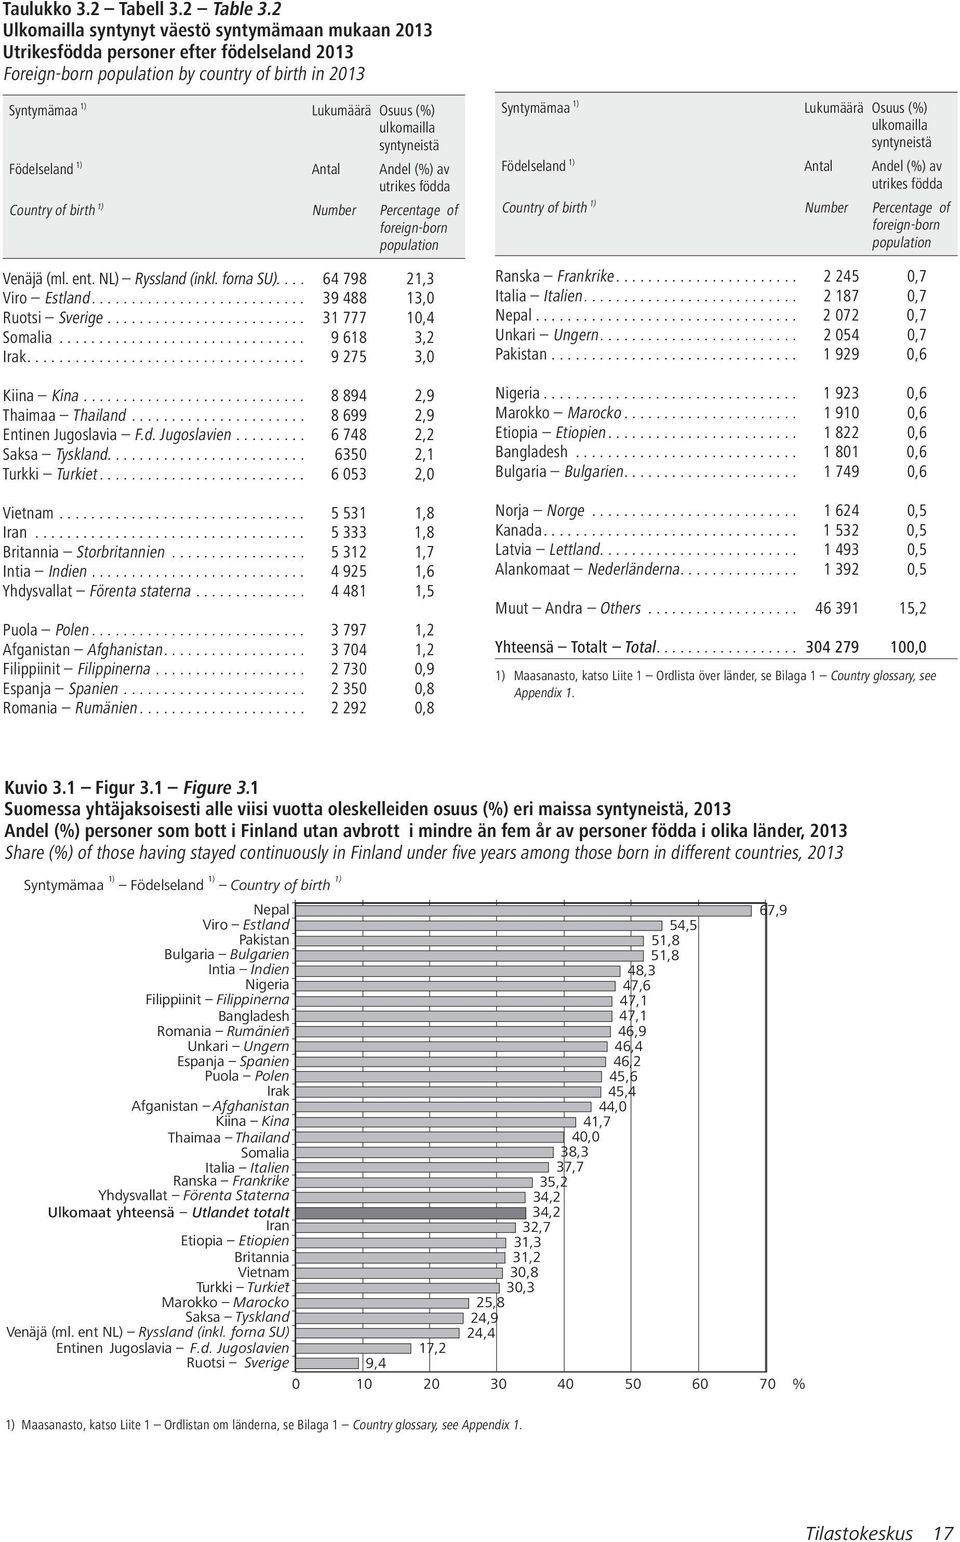 syntyneistä Födelseland 1) Antal Andel (%) av utrikes födda Country of birth 1) Number Percentage of foreign-born population Venäjä (ml. ent. NL) Ryssland (inkl. forna SU).... 64 798 21,3 Viro Estland.